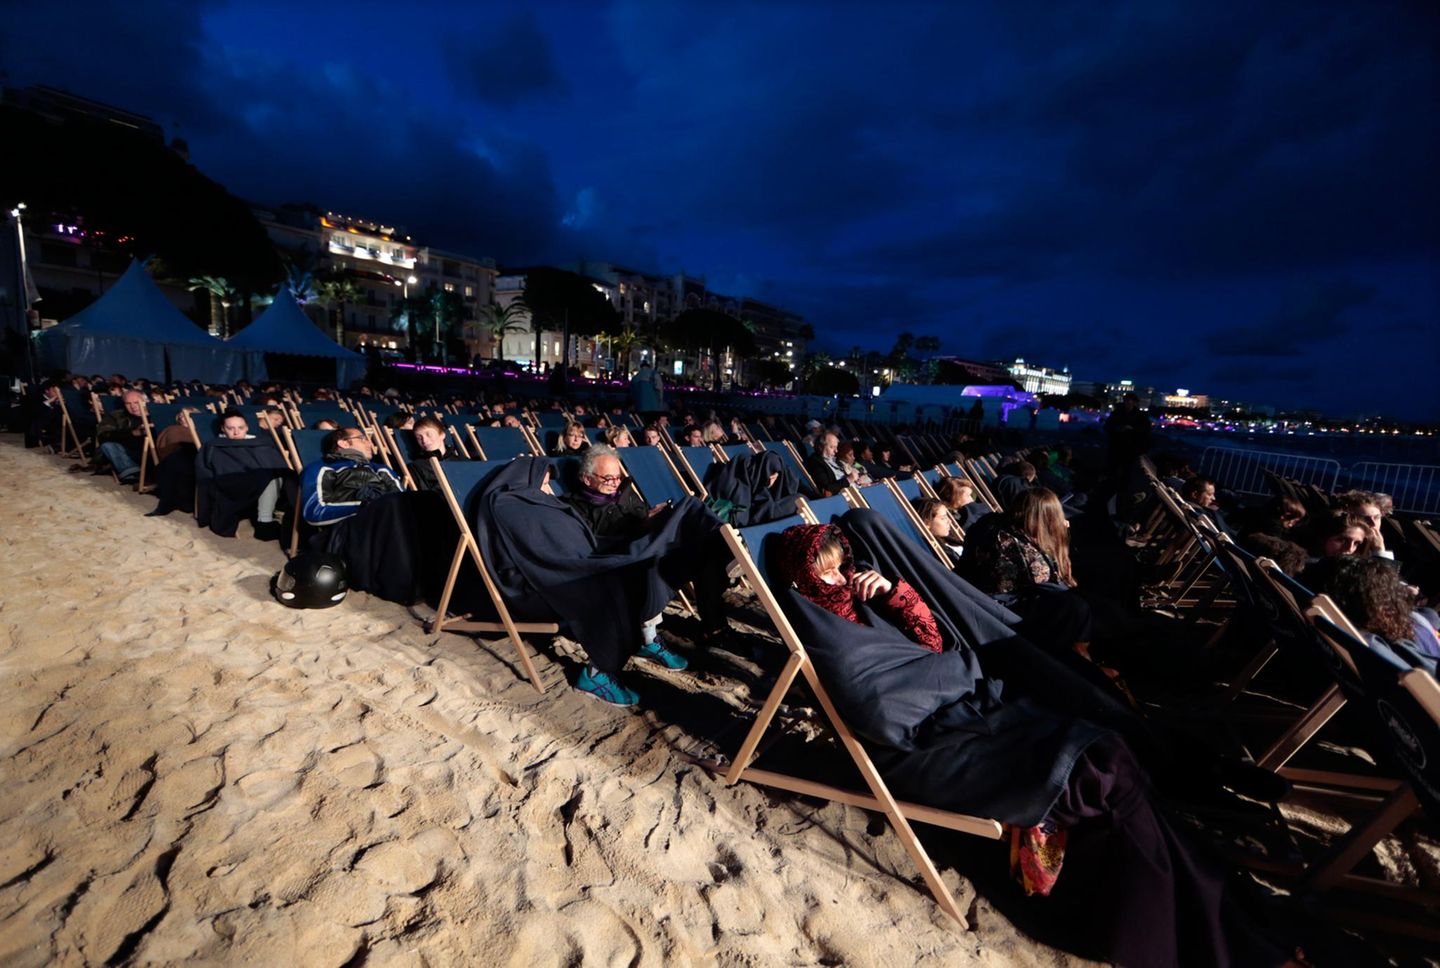 Dick eingepackt mummeln sich Festival-Zuschauer am Strand in ihre Liegestühle.